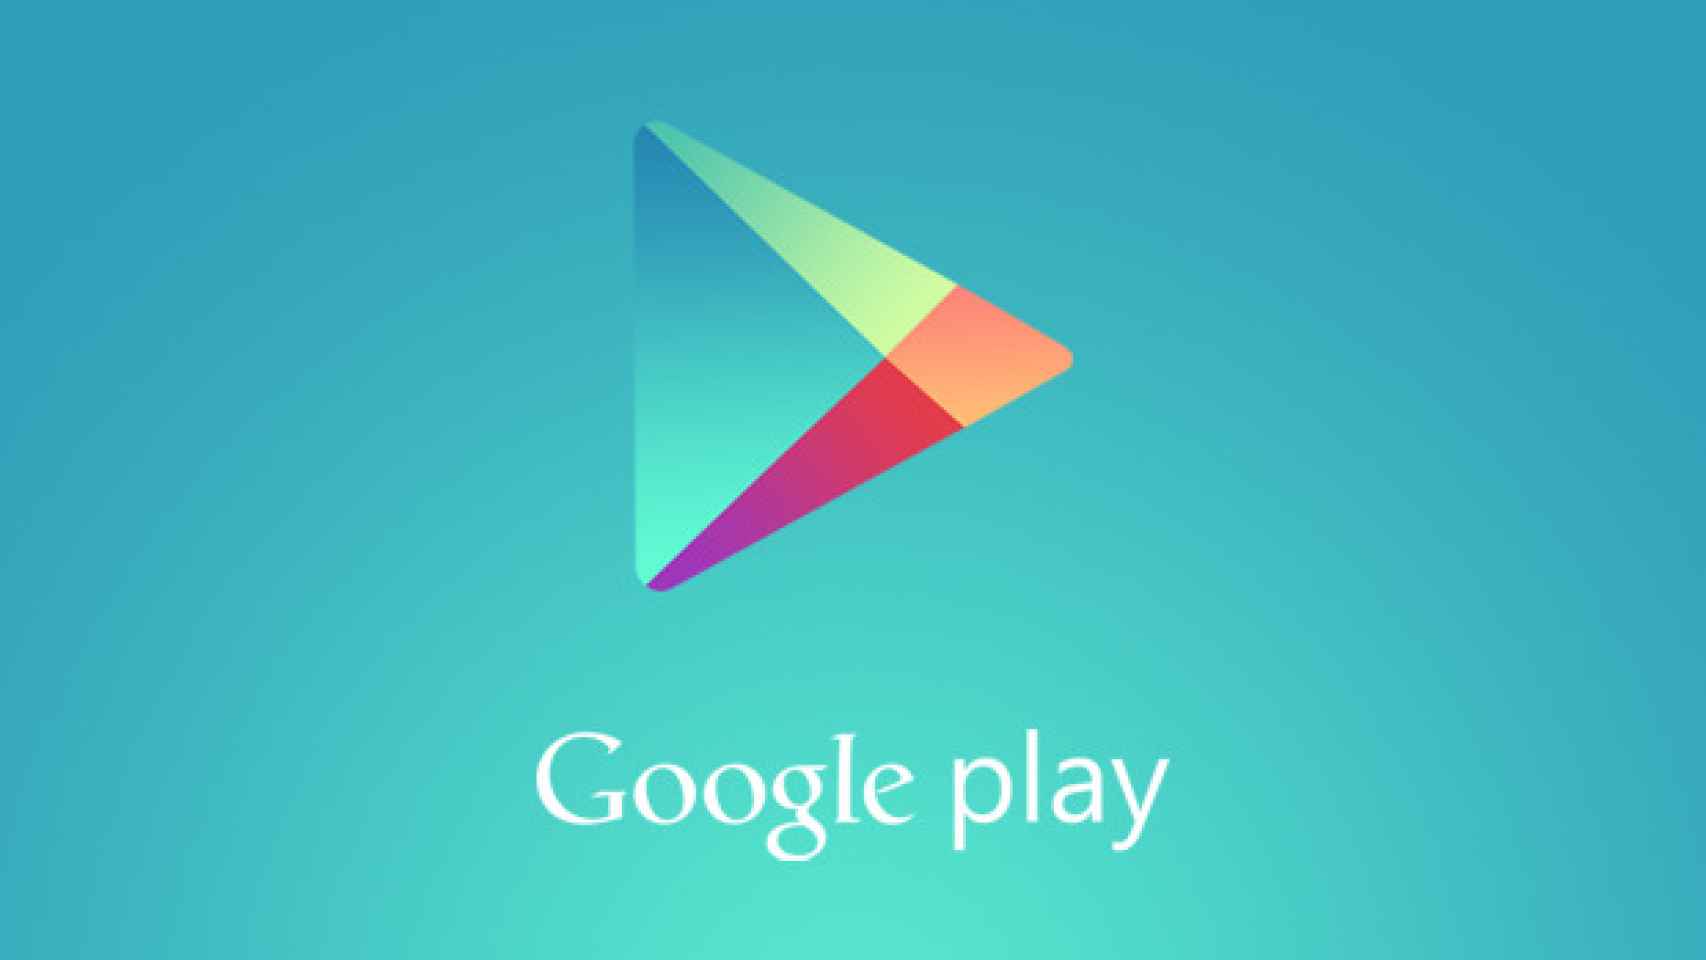 Google Play por fin permite códigos promocionales para regalar aplicaciones